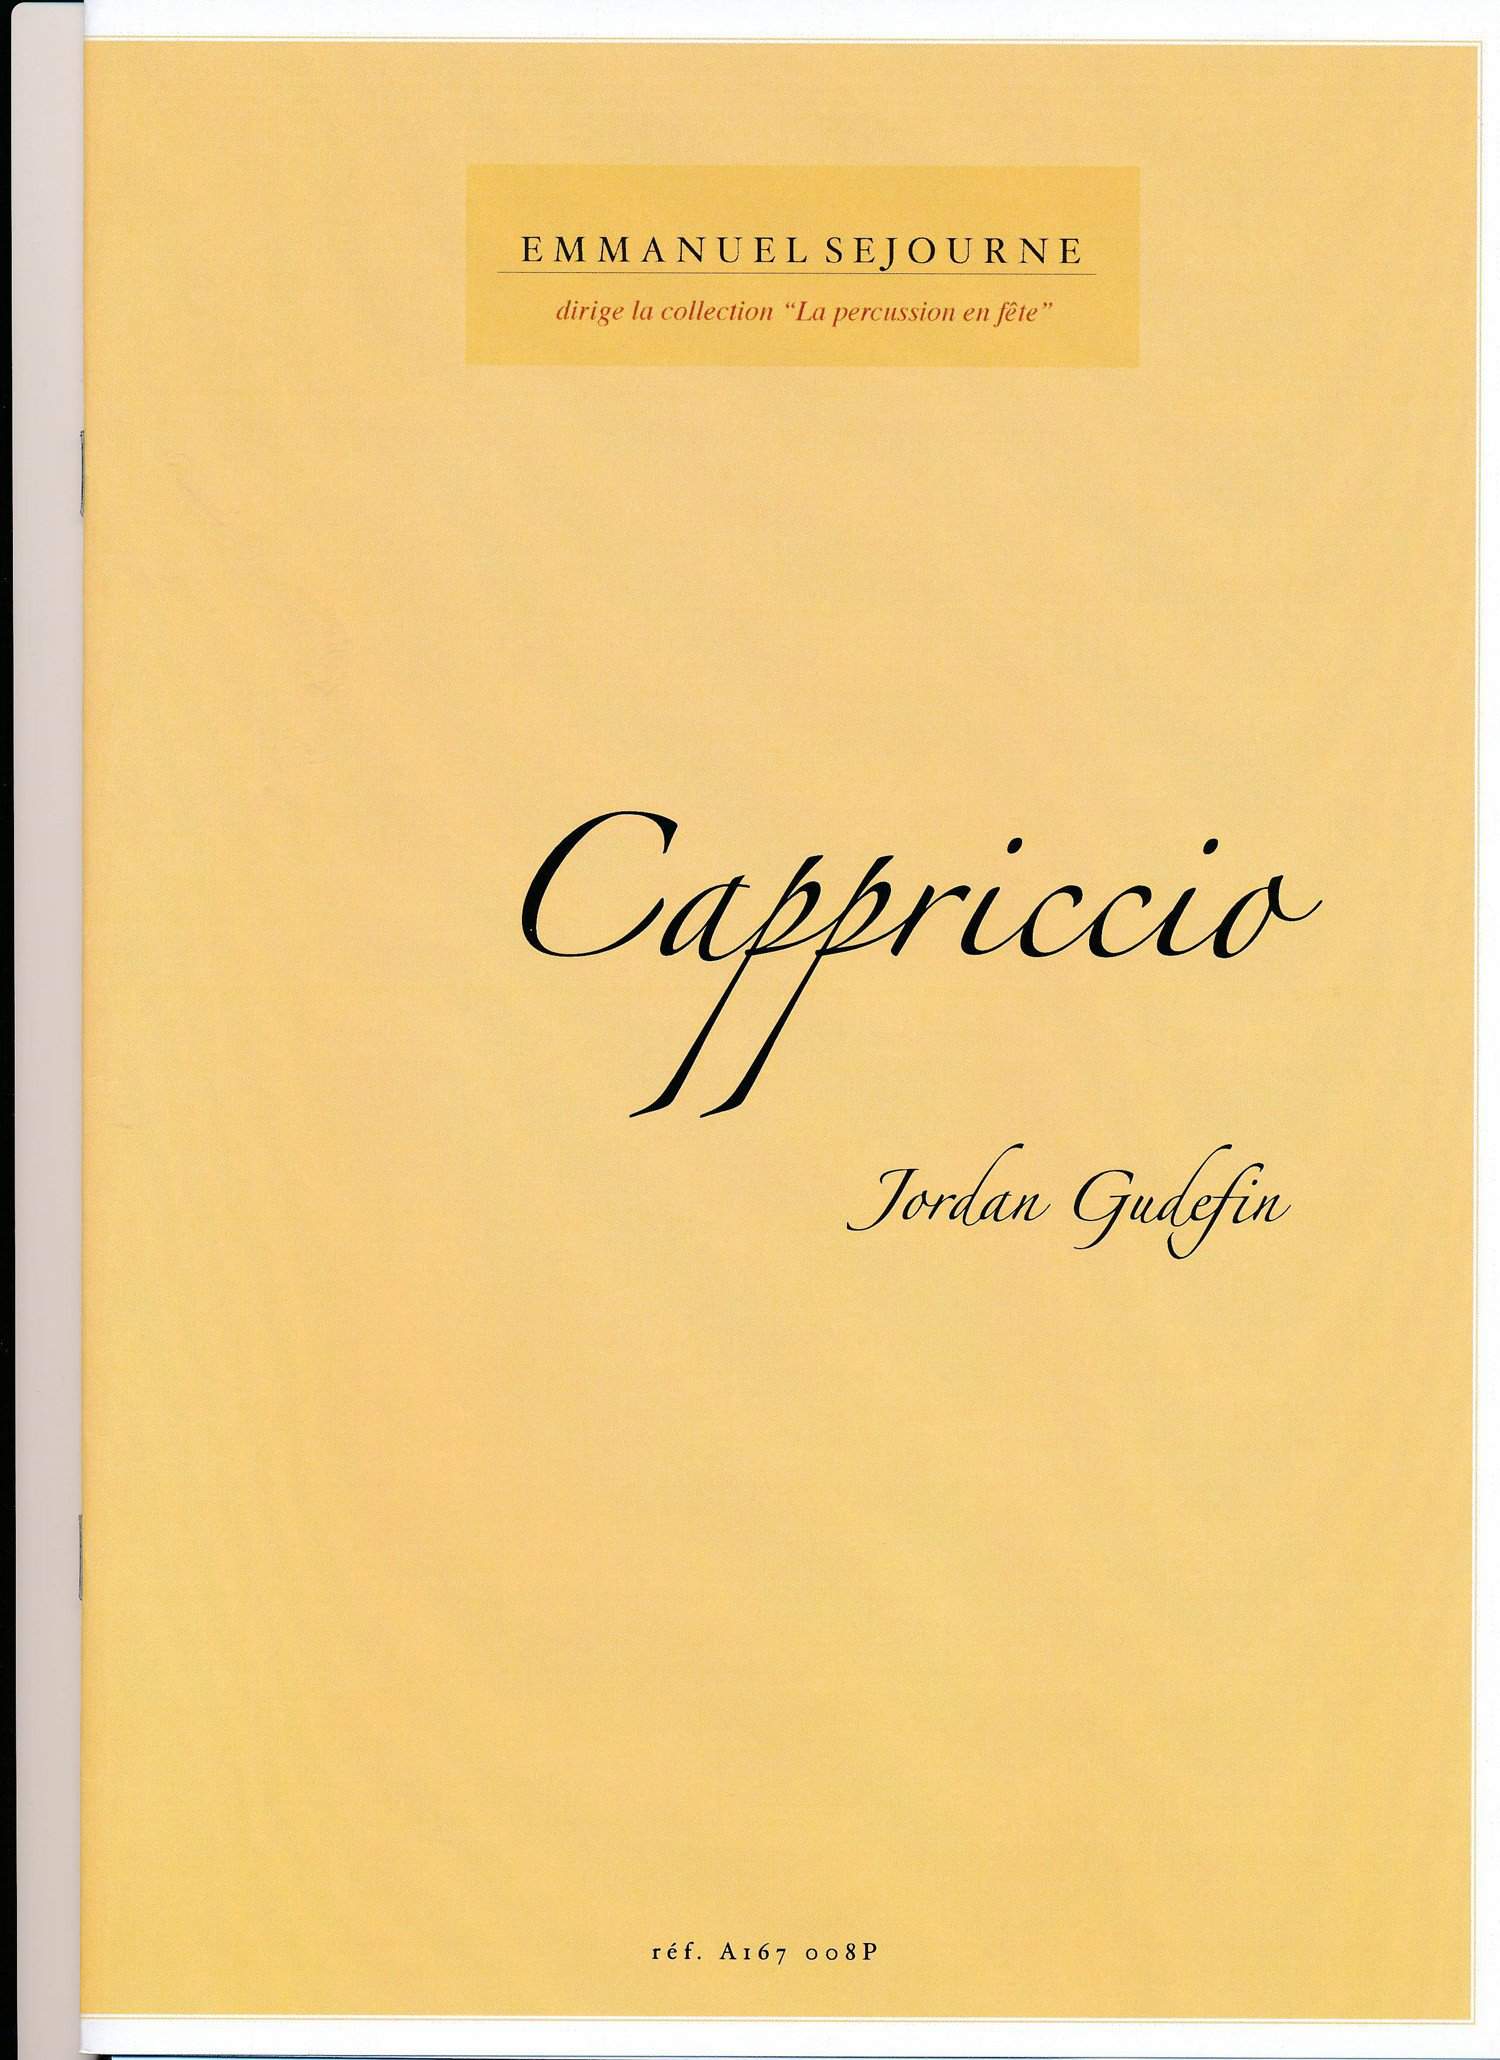 Cappriccio by Jordan Gudefin